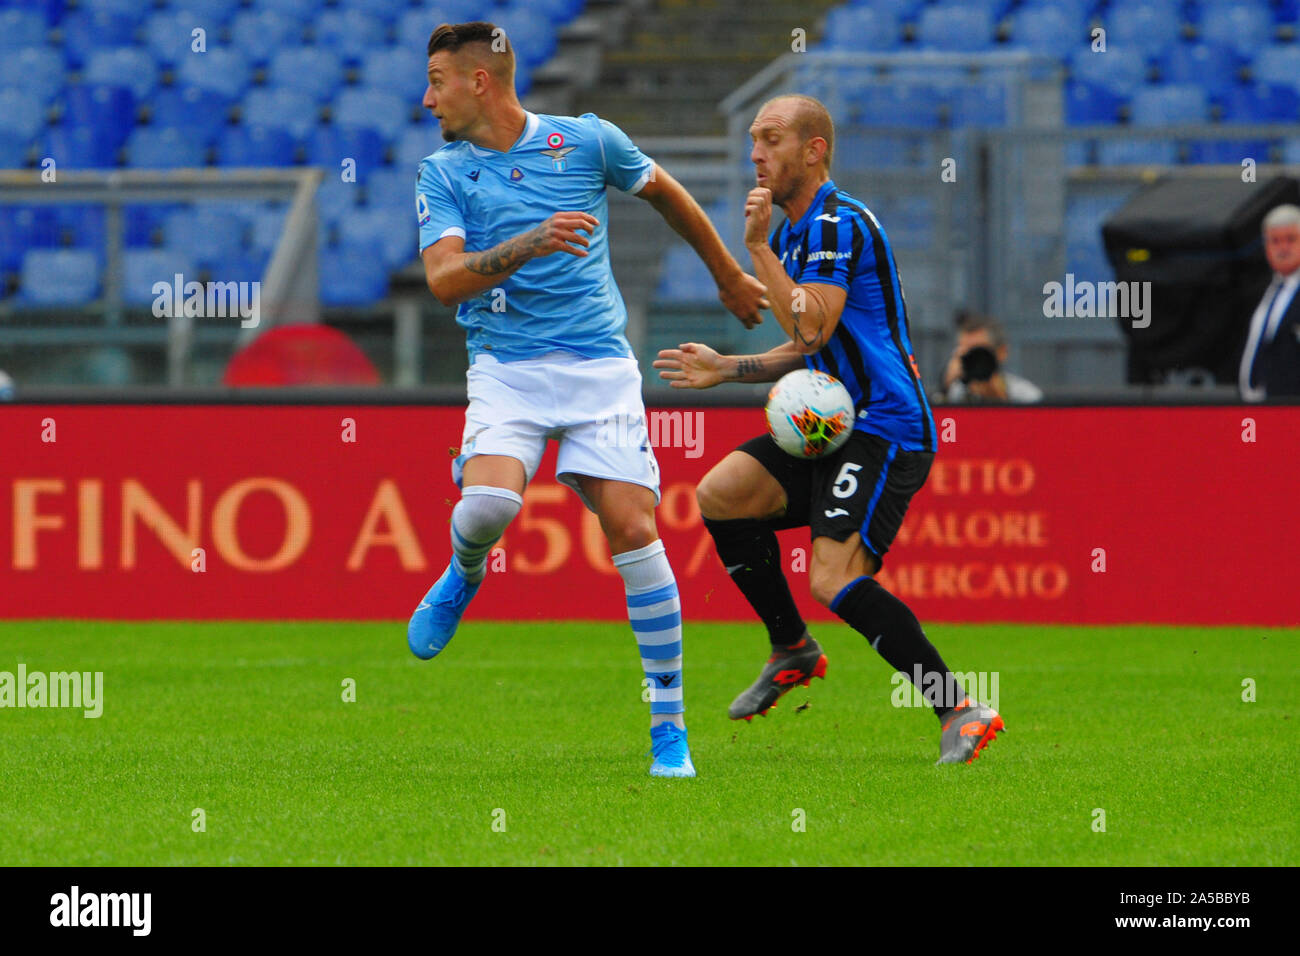 Andrea Masiello (Atalanta) au cours de la SS Lazio vs Atalanta, Roma, Italie, 19 octobre 2019 soccer, football italien Serie A Championnat Hommes Banque D'Images